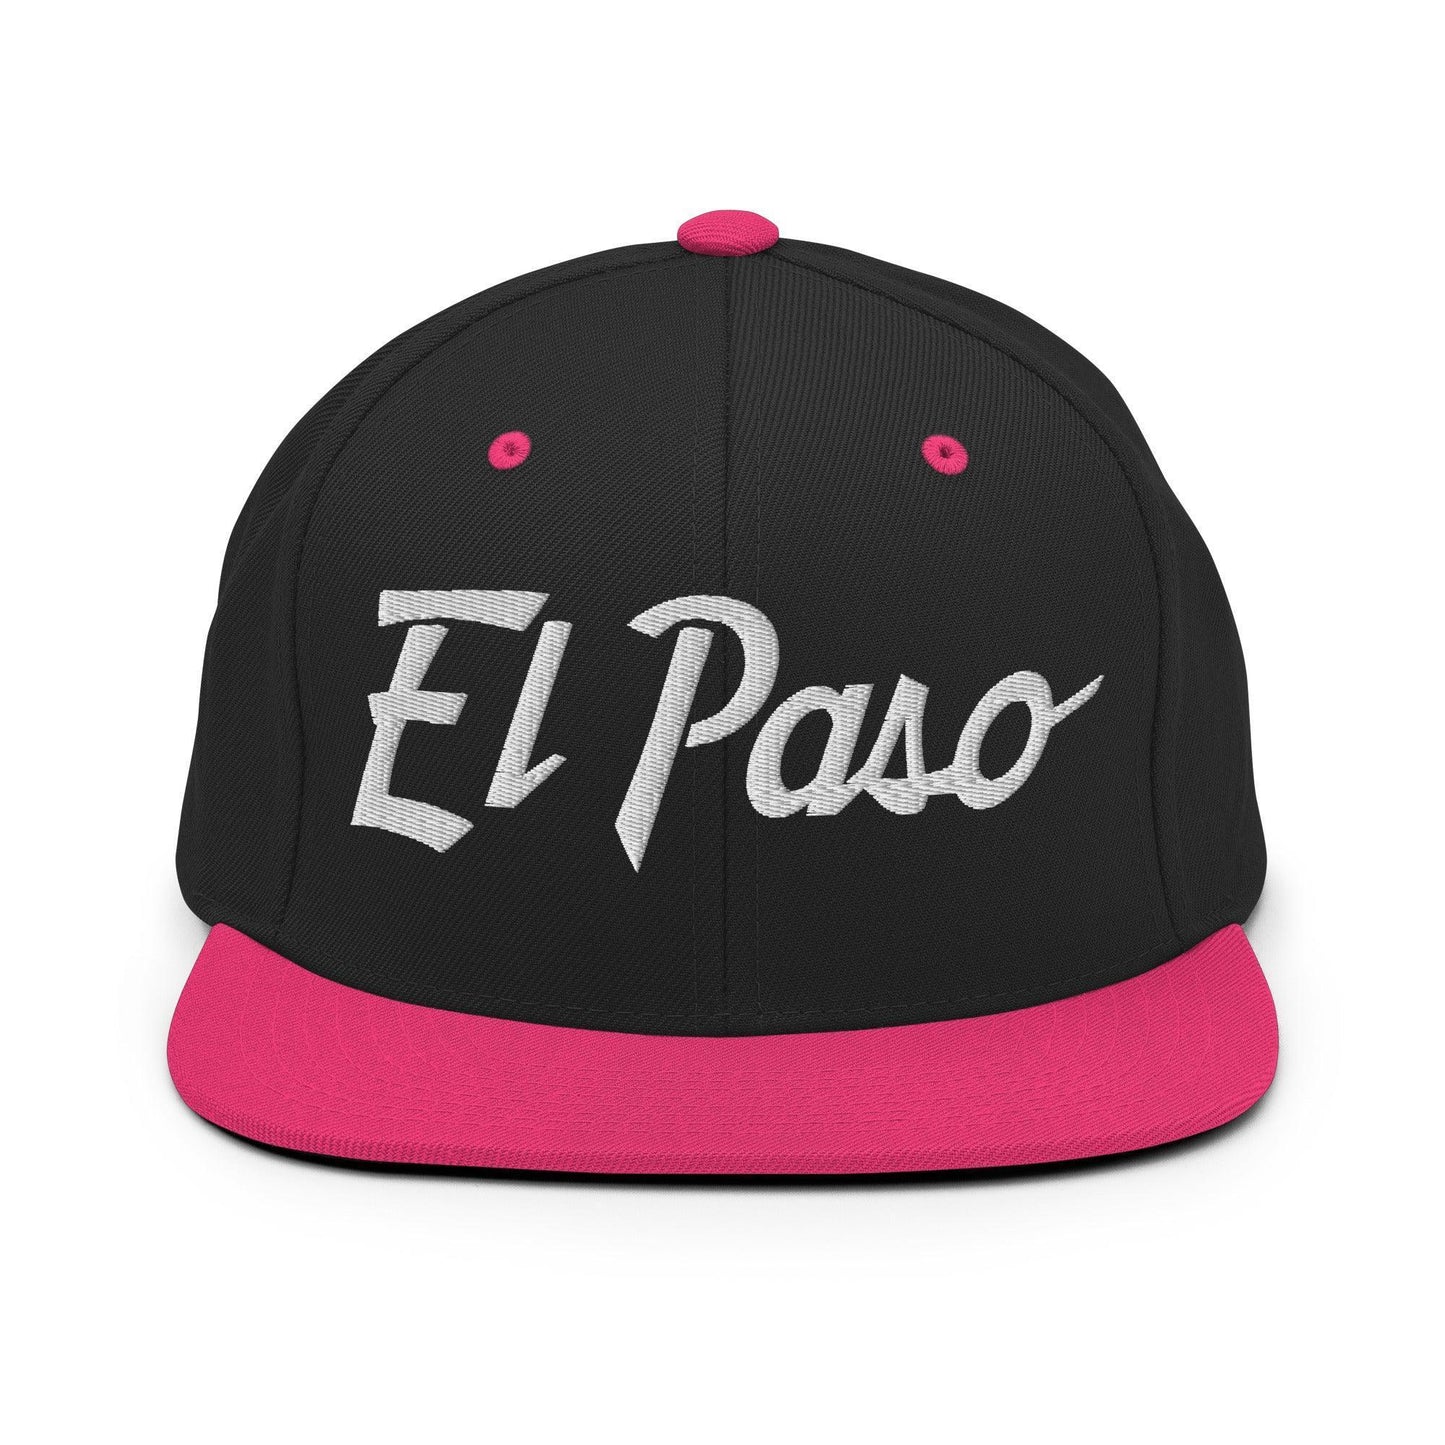 El Paso Script Snapback Hat Black Neon Pink